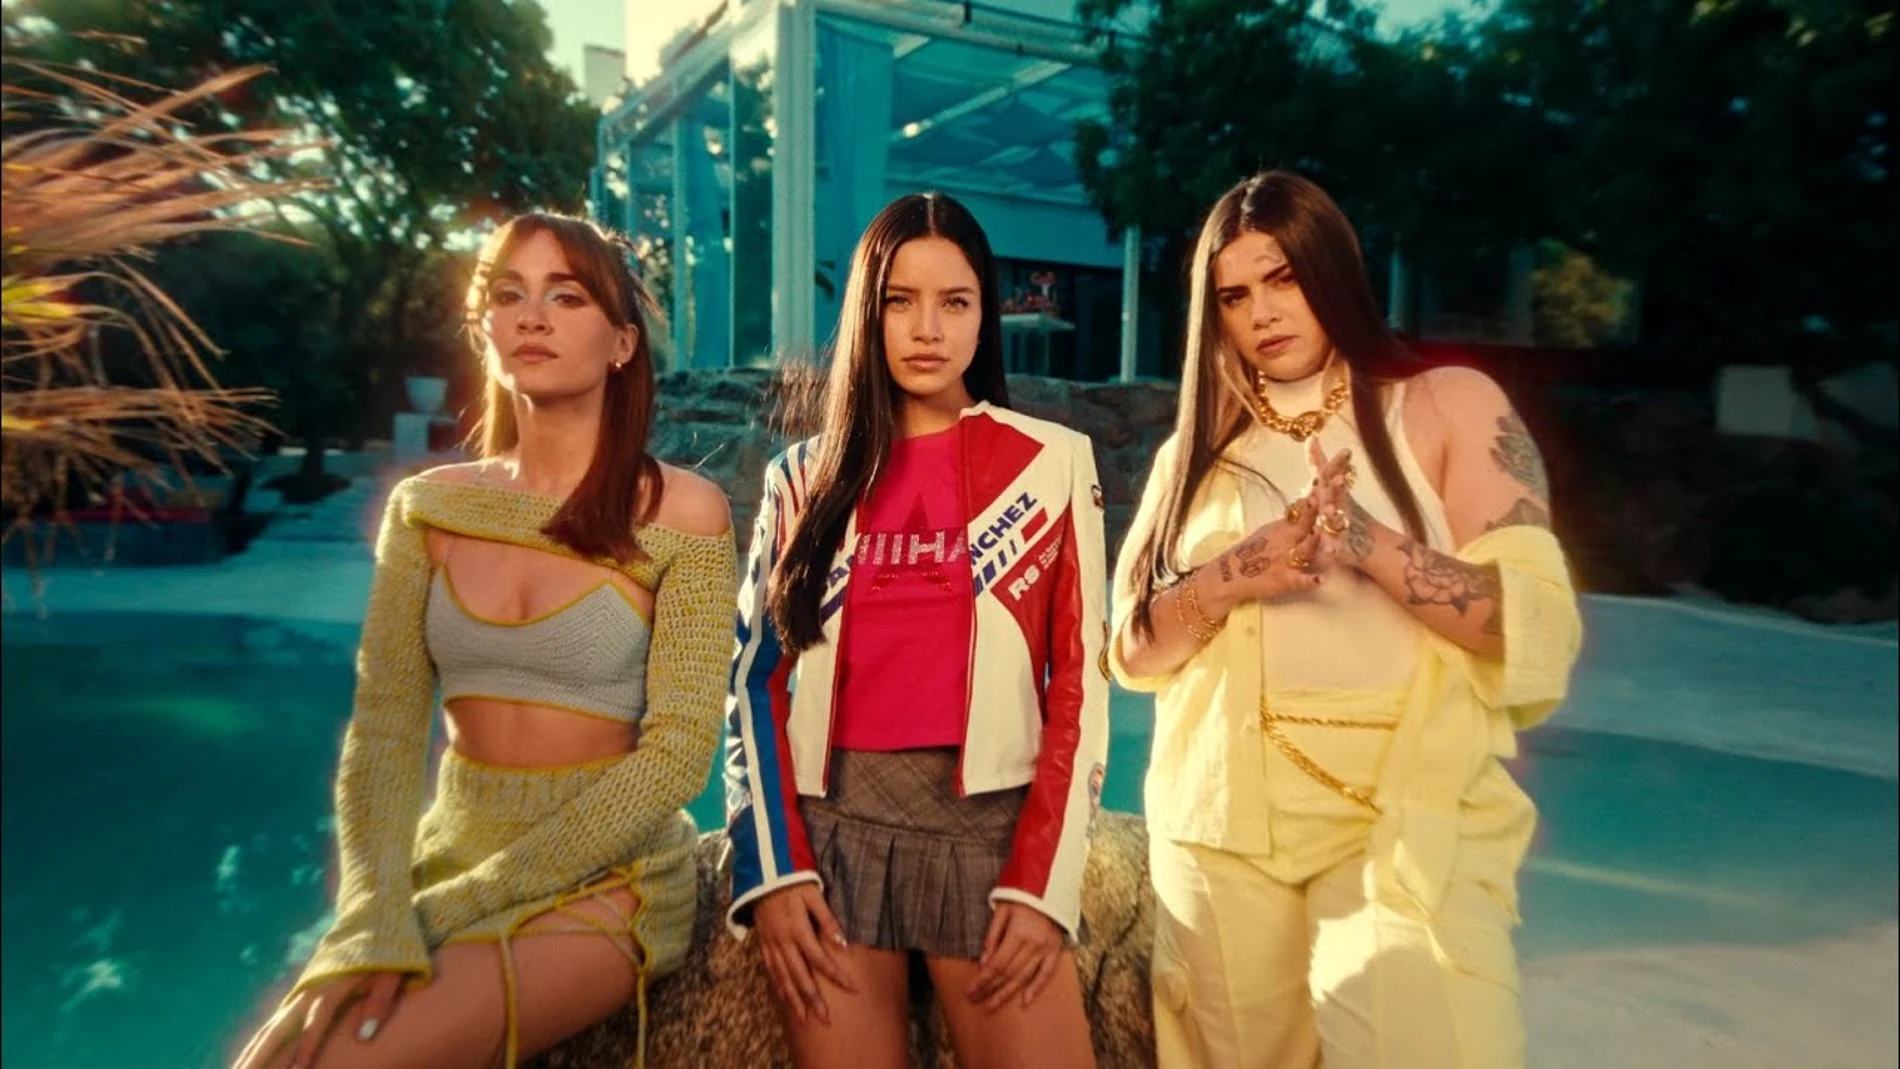 Reggaeton y rimas en 'Quieres', la propuesta de Aitana, Ptazeta y Emilia para canción del verano 